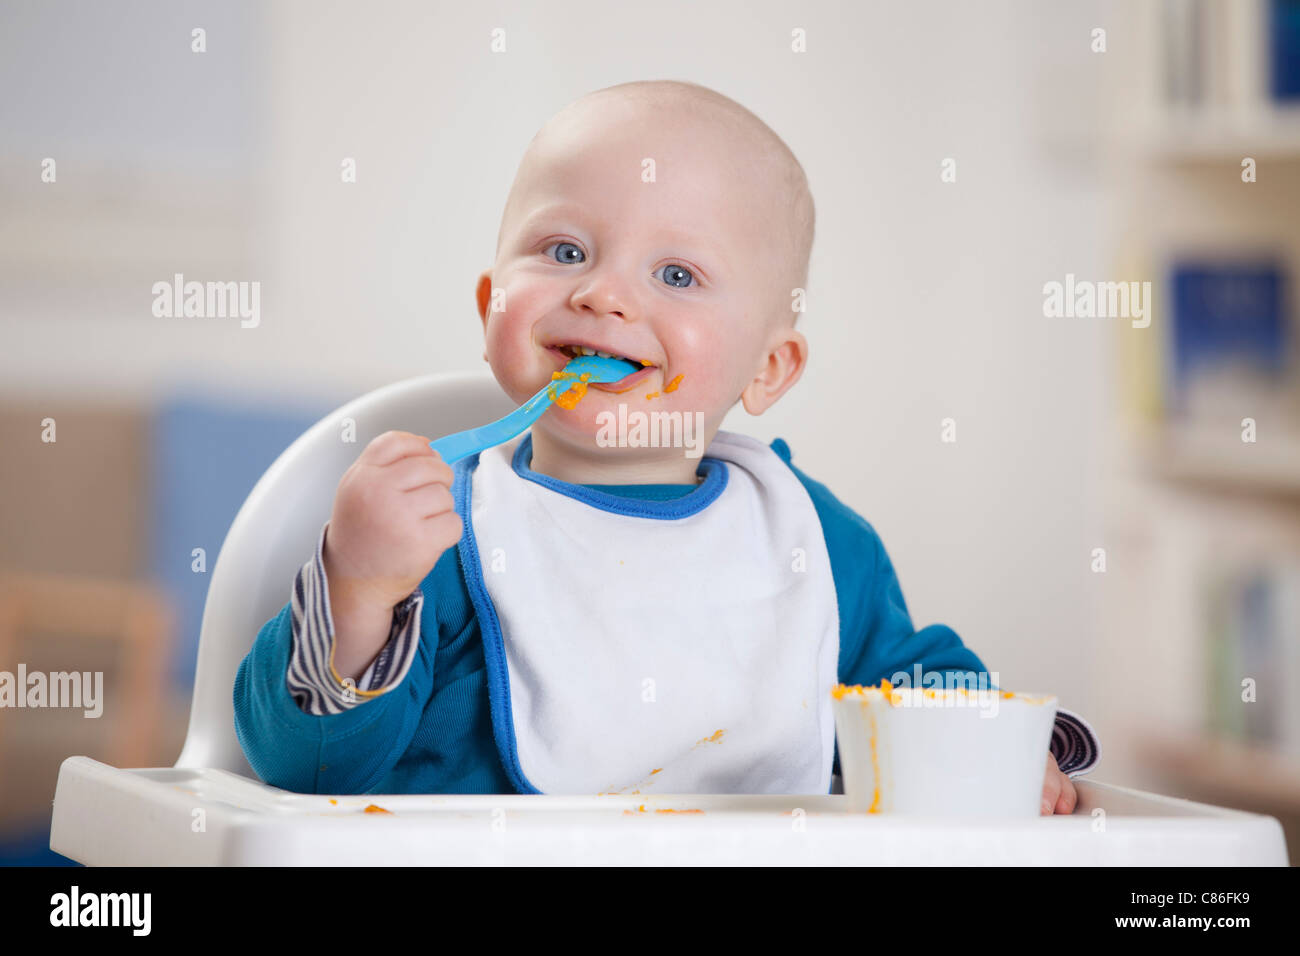 Smiling baby boy eating dans une chaise haute Banque D'Images